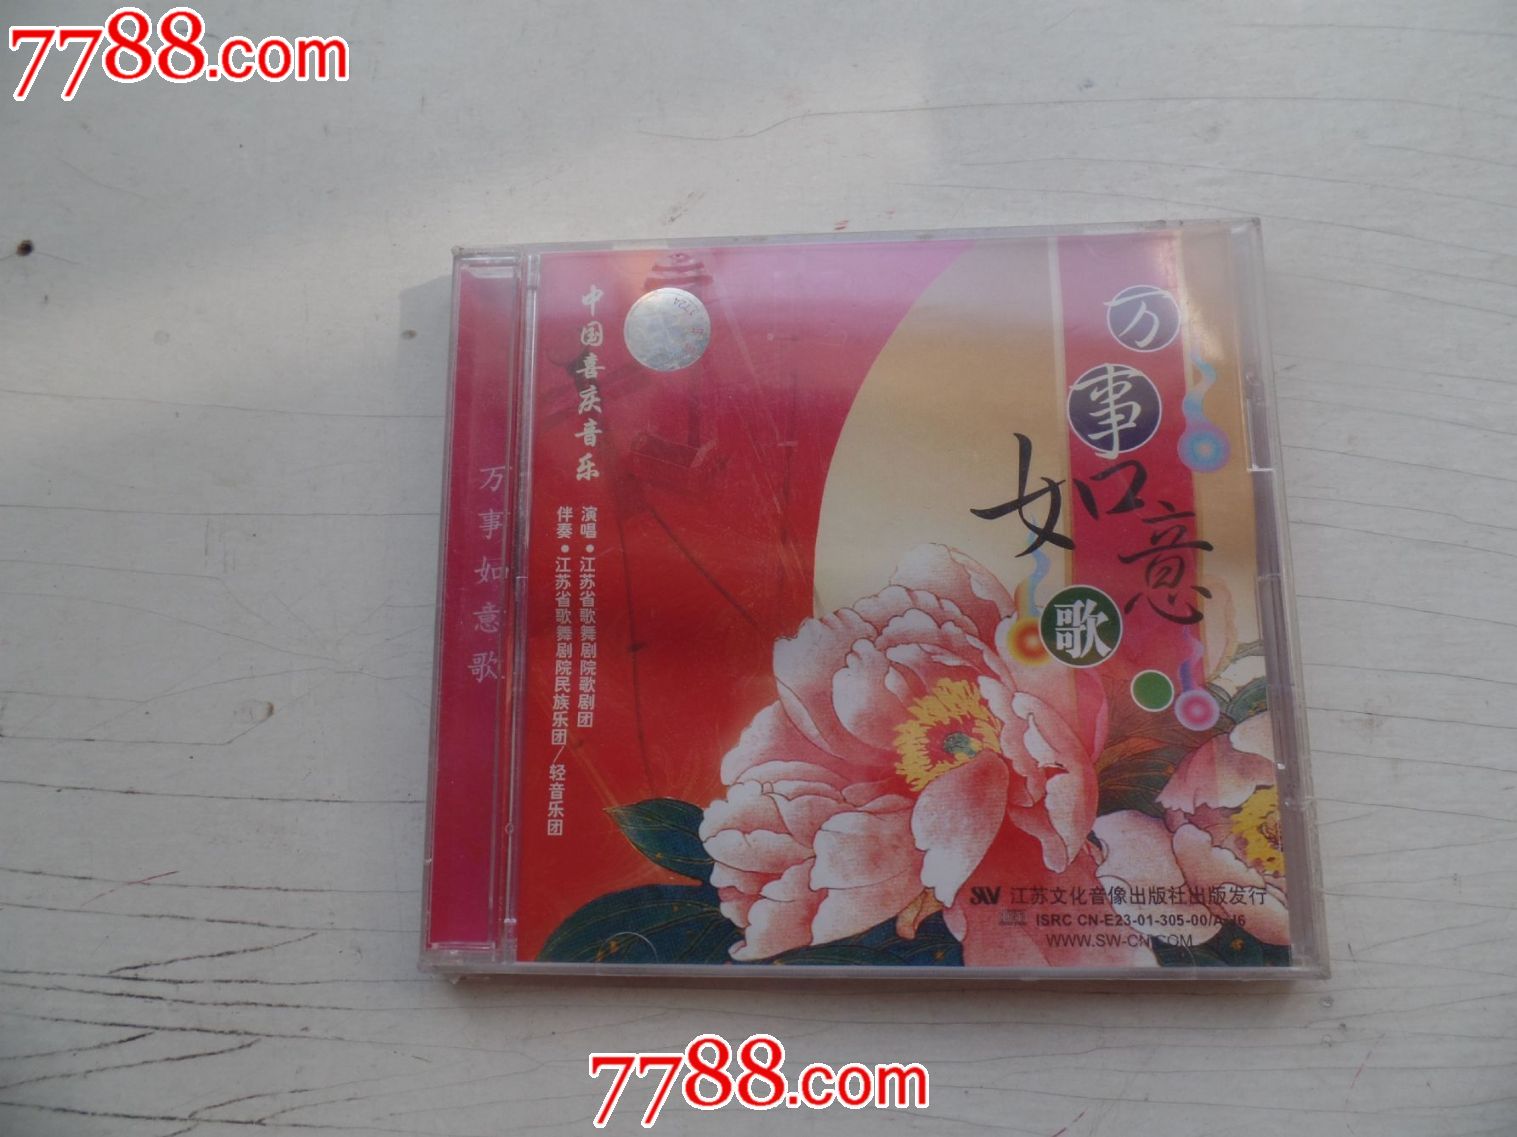 中国喜庆音乐万事如意歌(CD)-价格:15元-se34